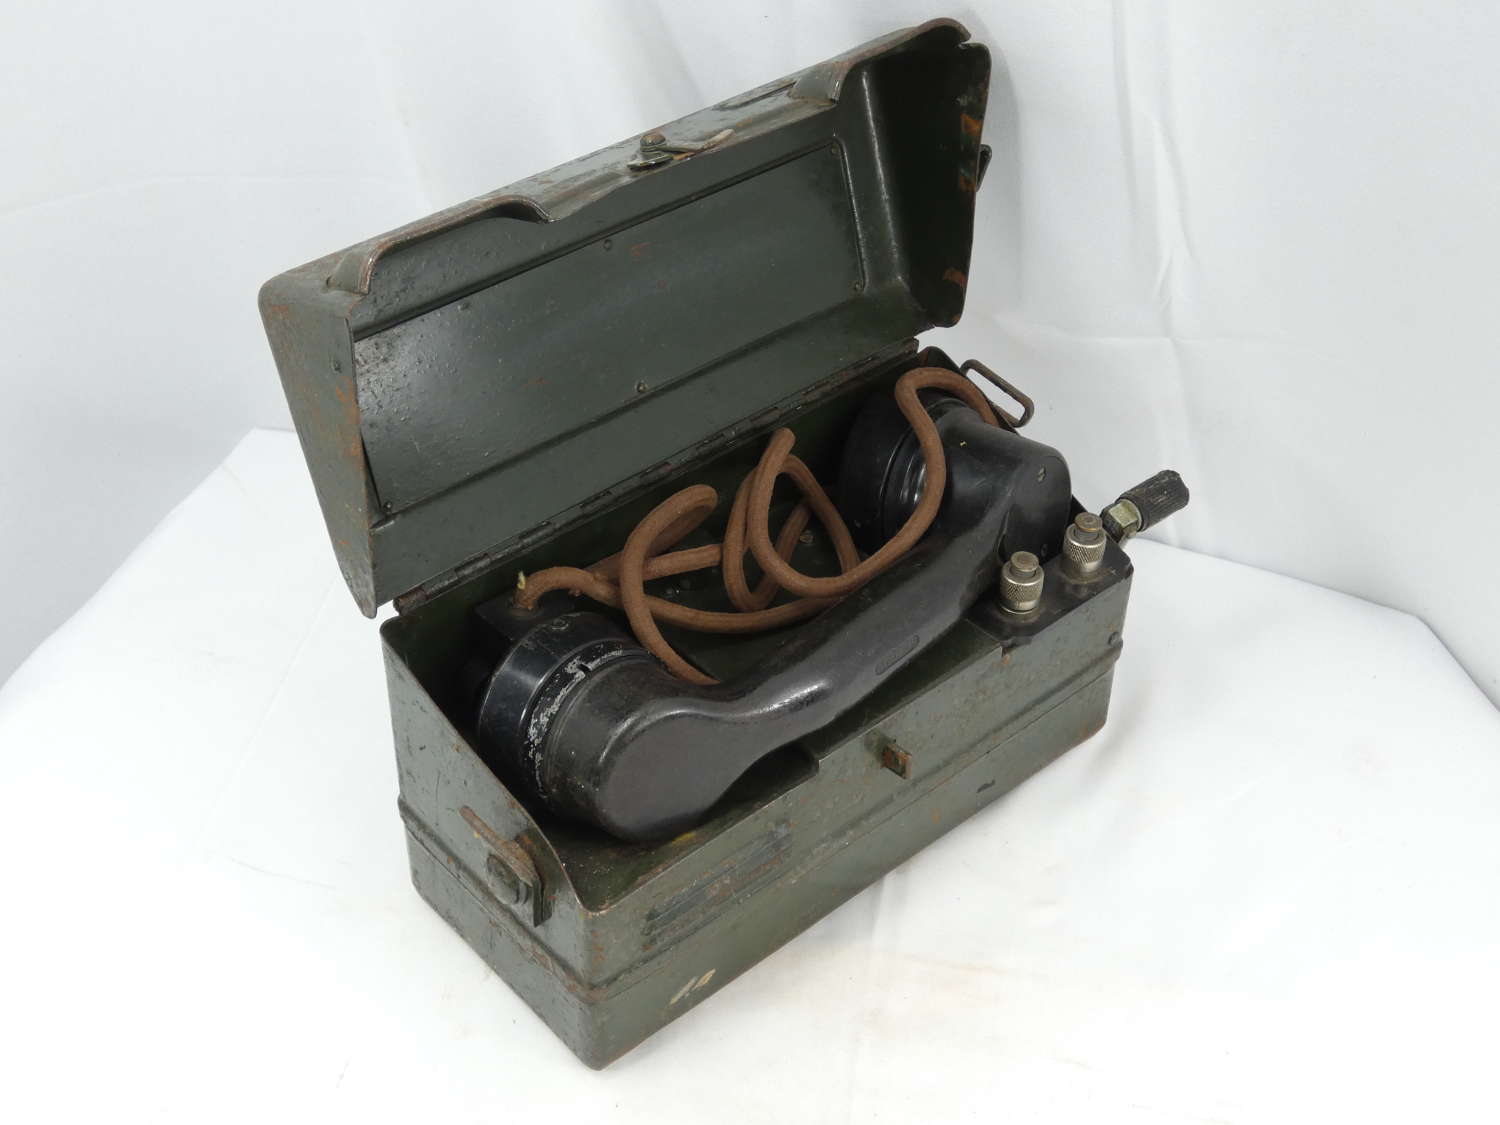 WW2 British Field Telephone